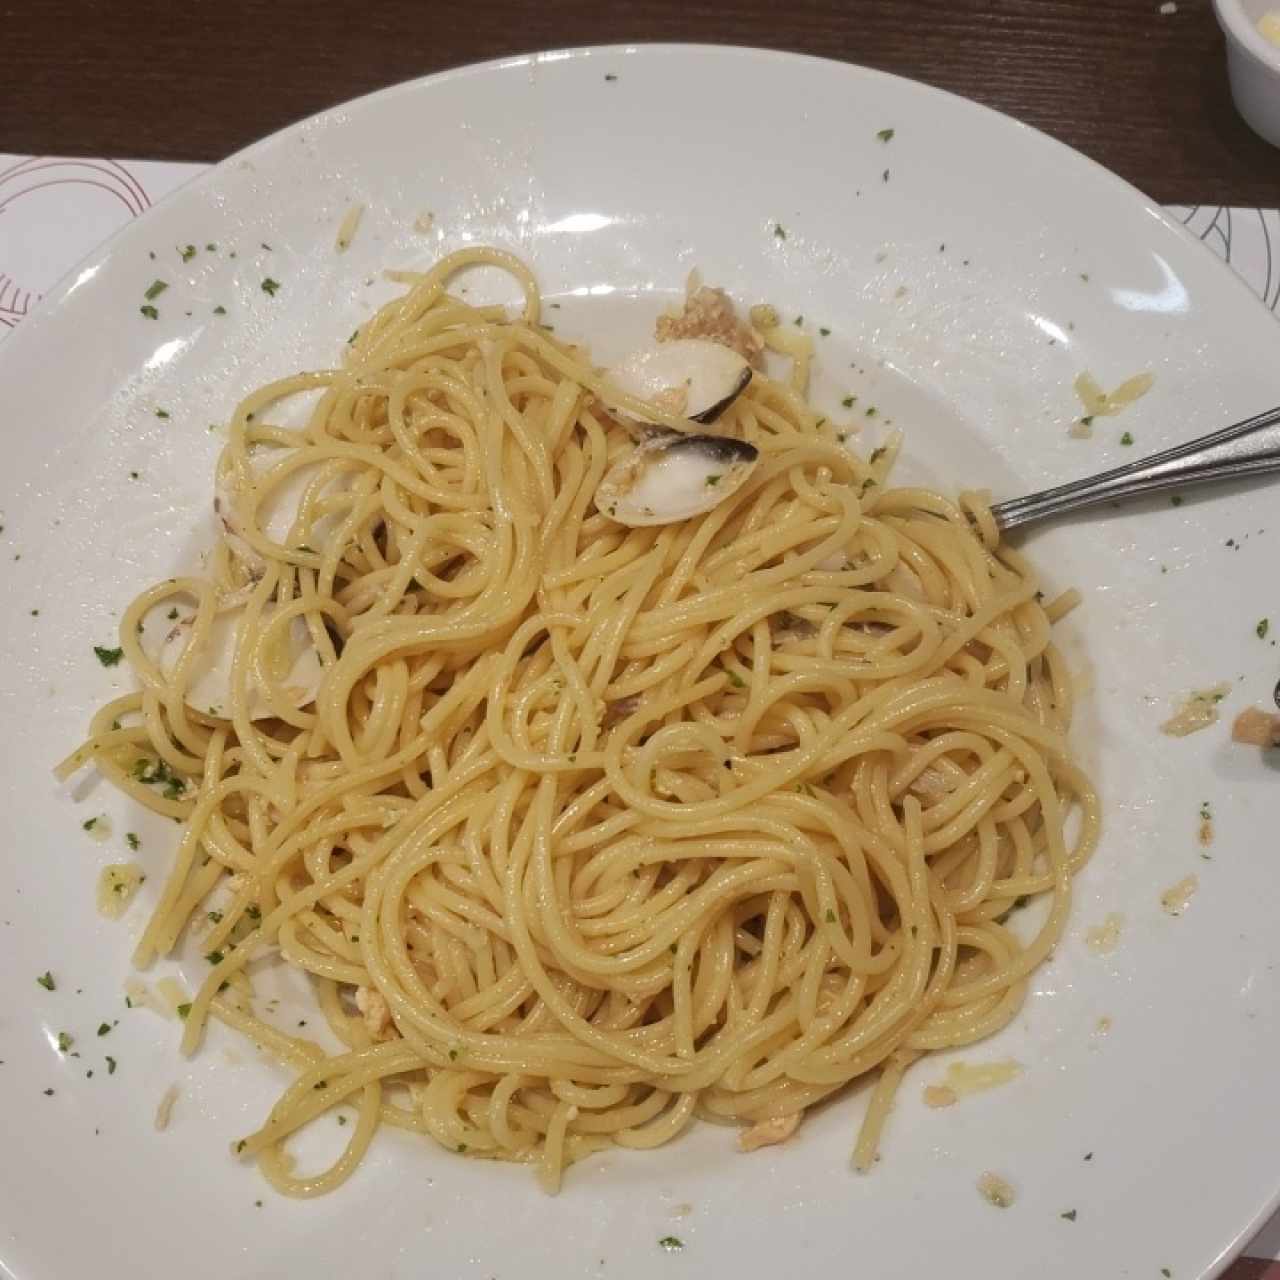 espaguetis con mariscos, dicen el menu